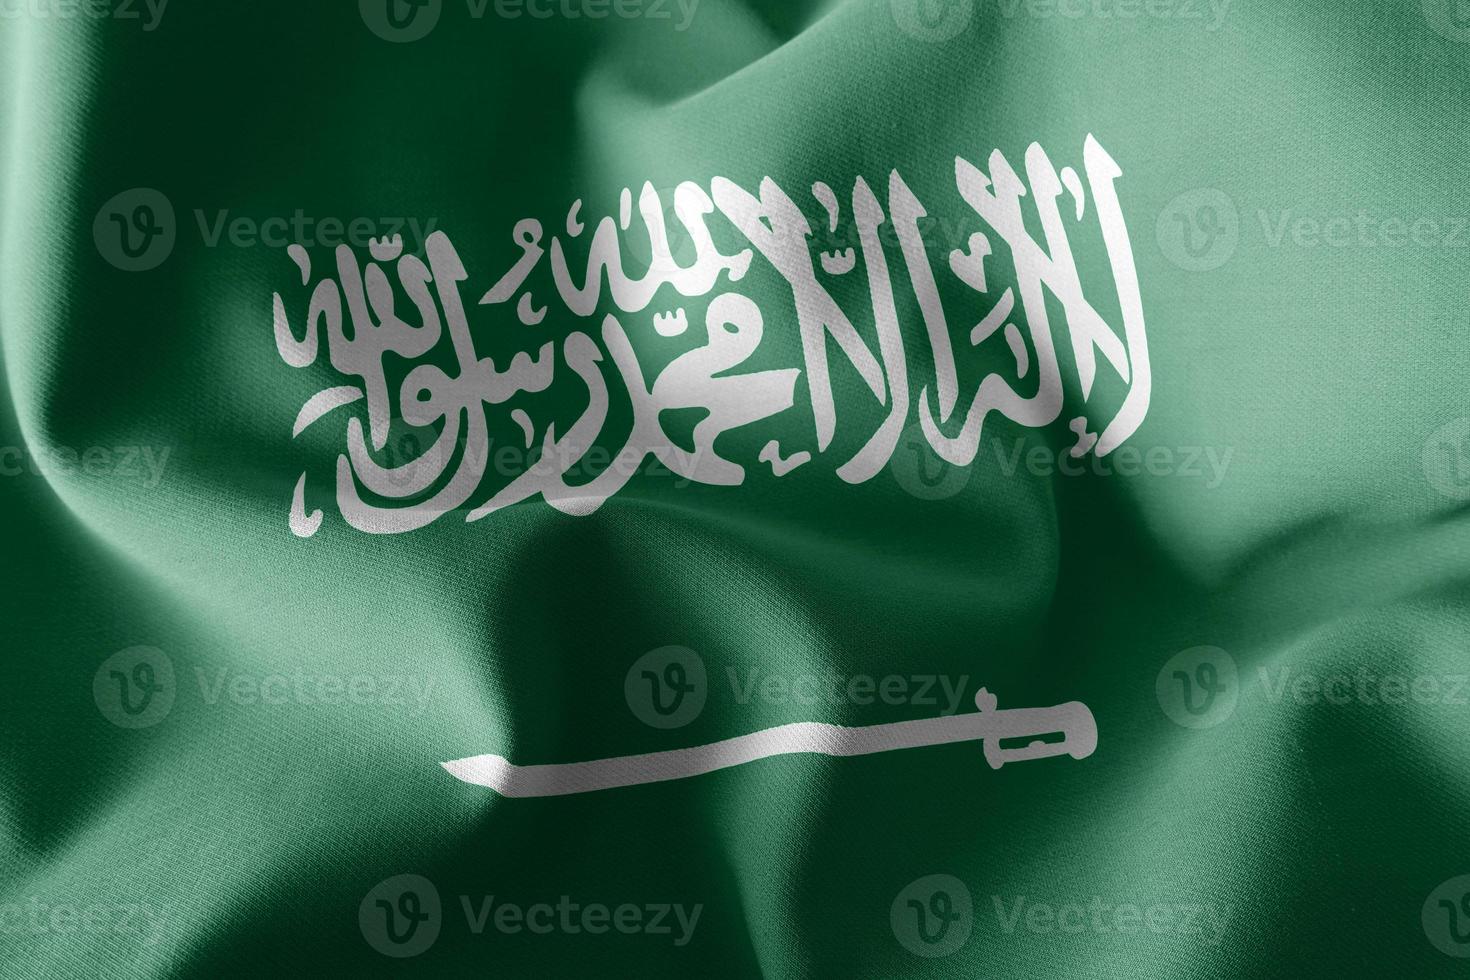 3D rendering illustrazione bandiera dell'Arabia Saudita foto